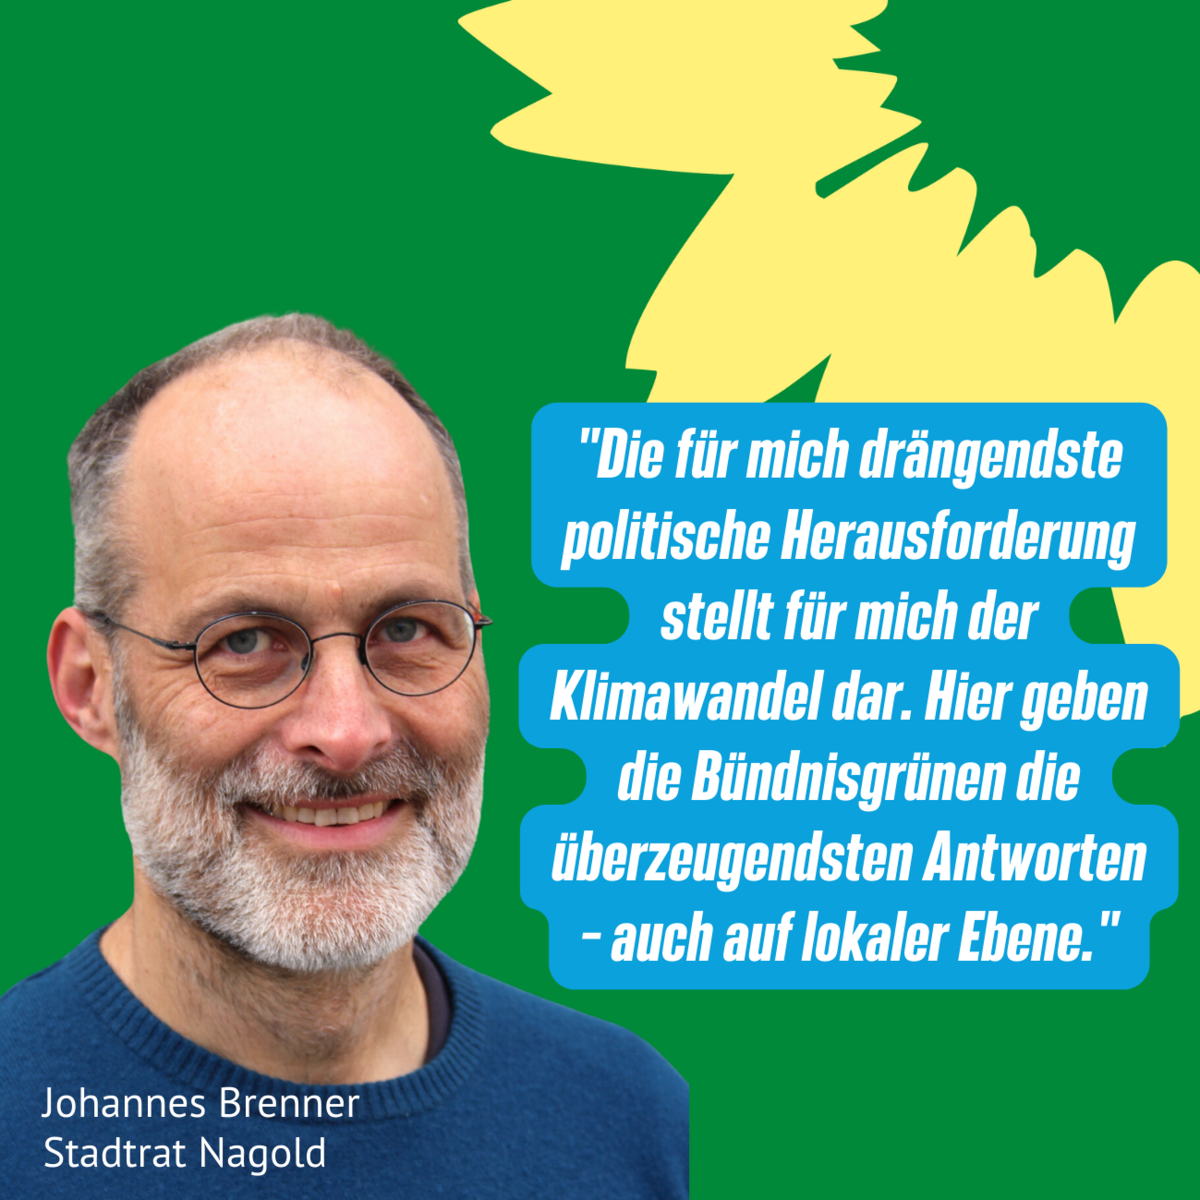 Johannes Brenner